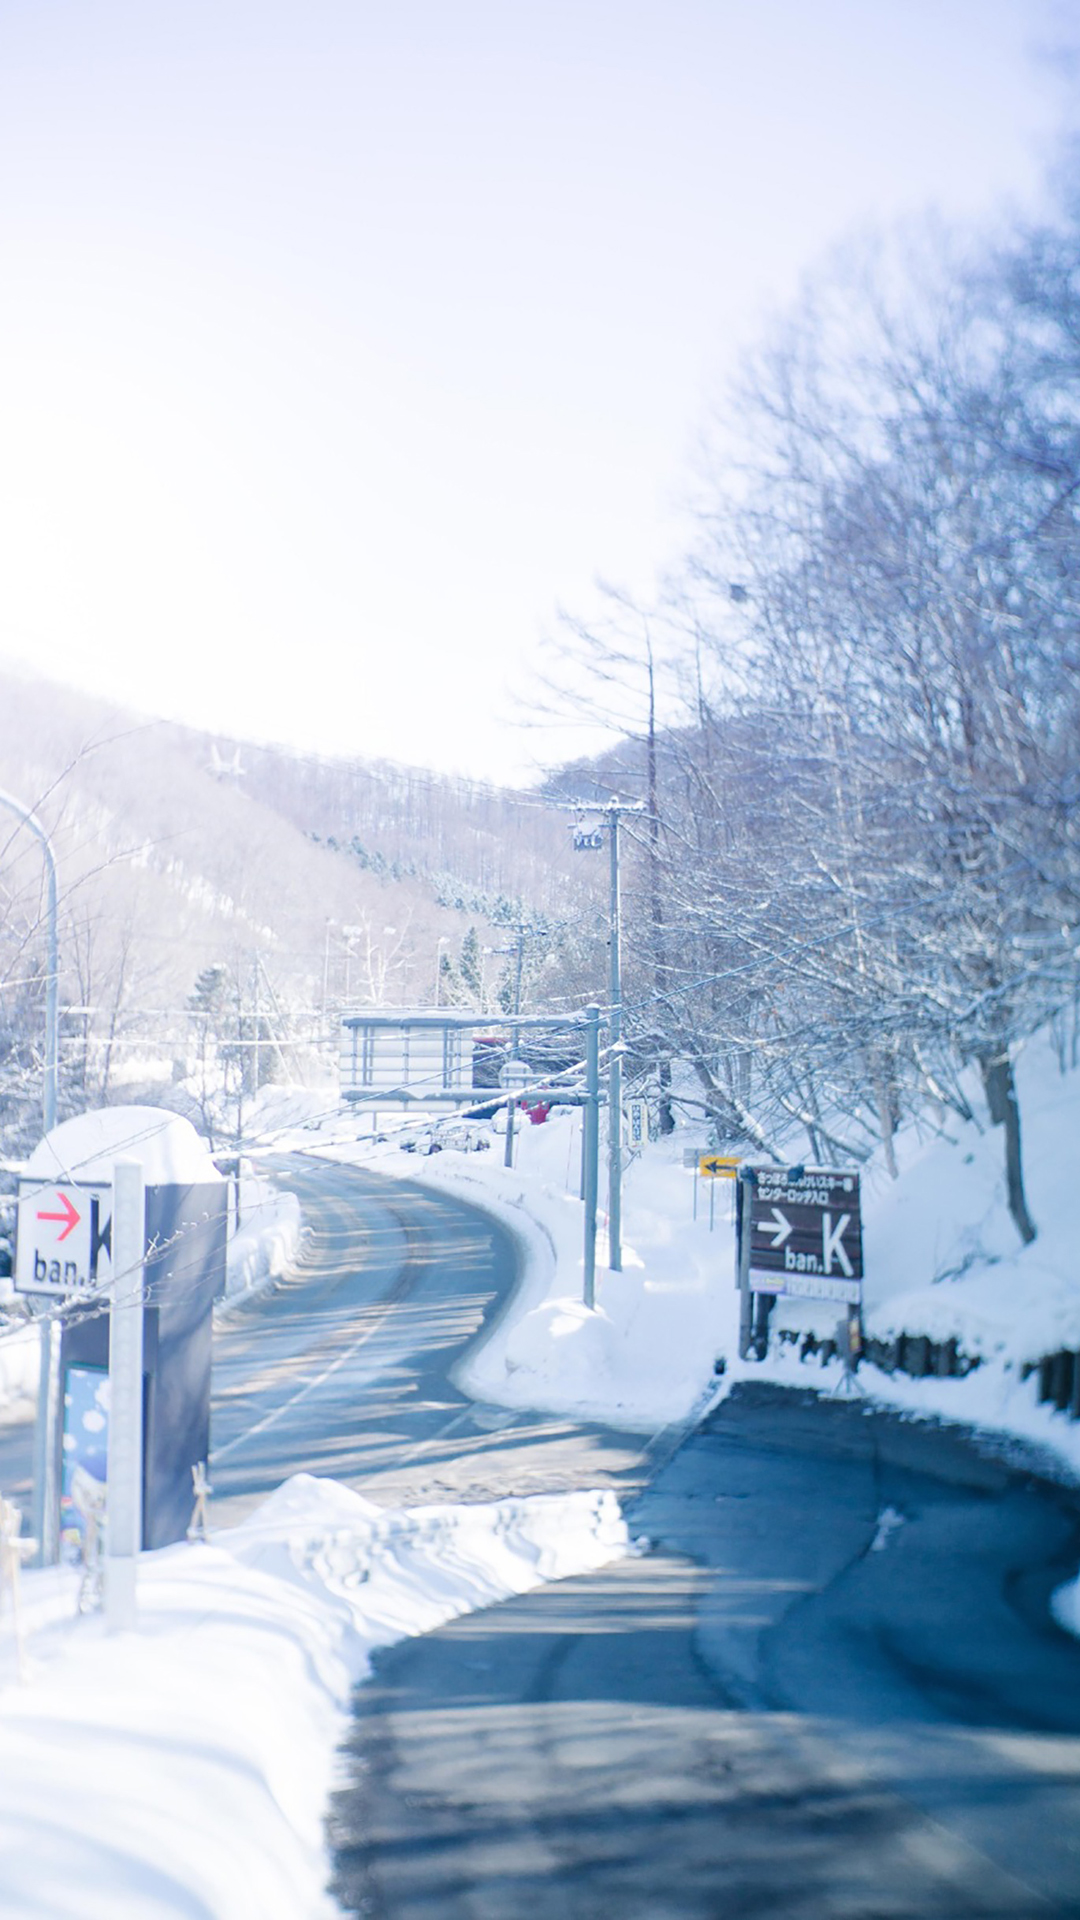 日本冬季雪景图片高清手机壁纸风景壁纸下载美桌网,手机壁纸高清个性女生